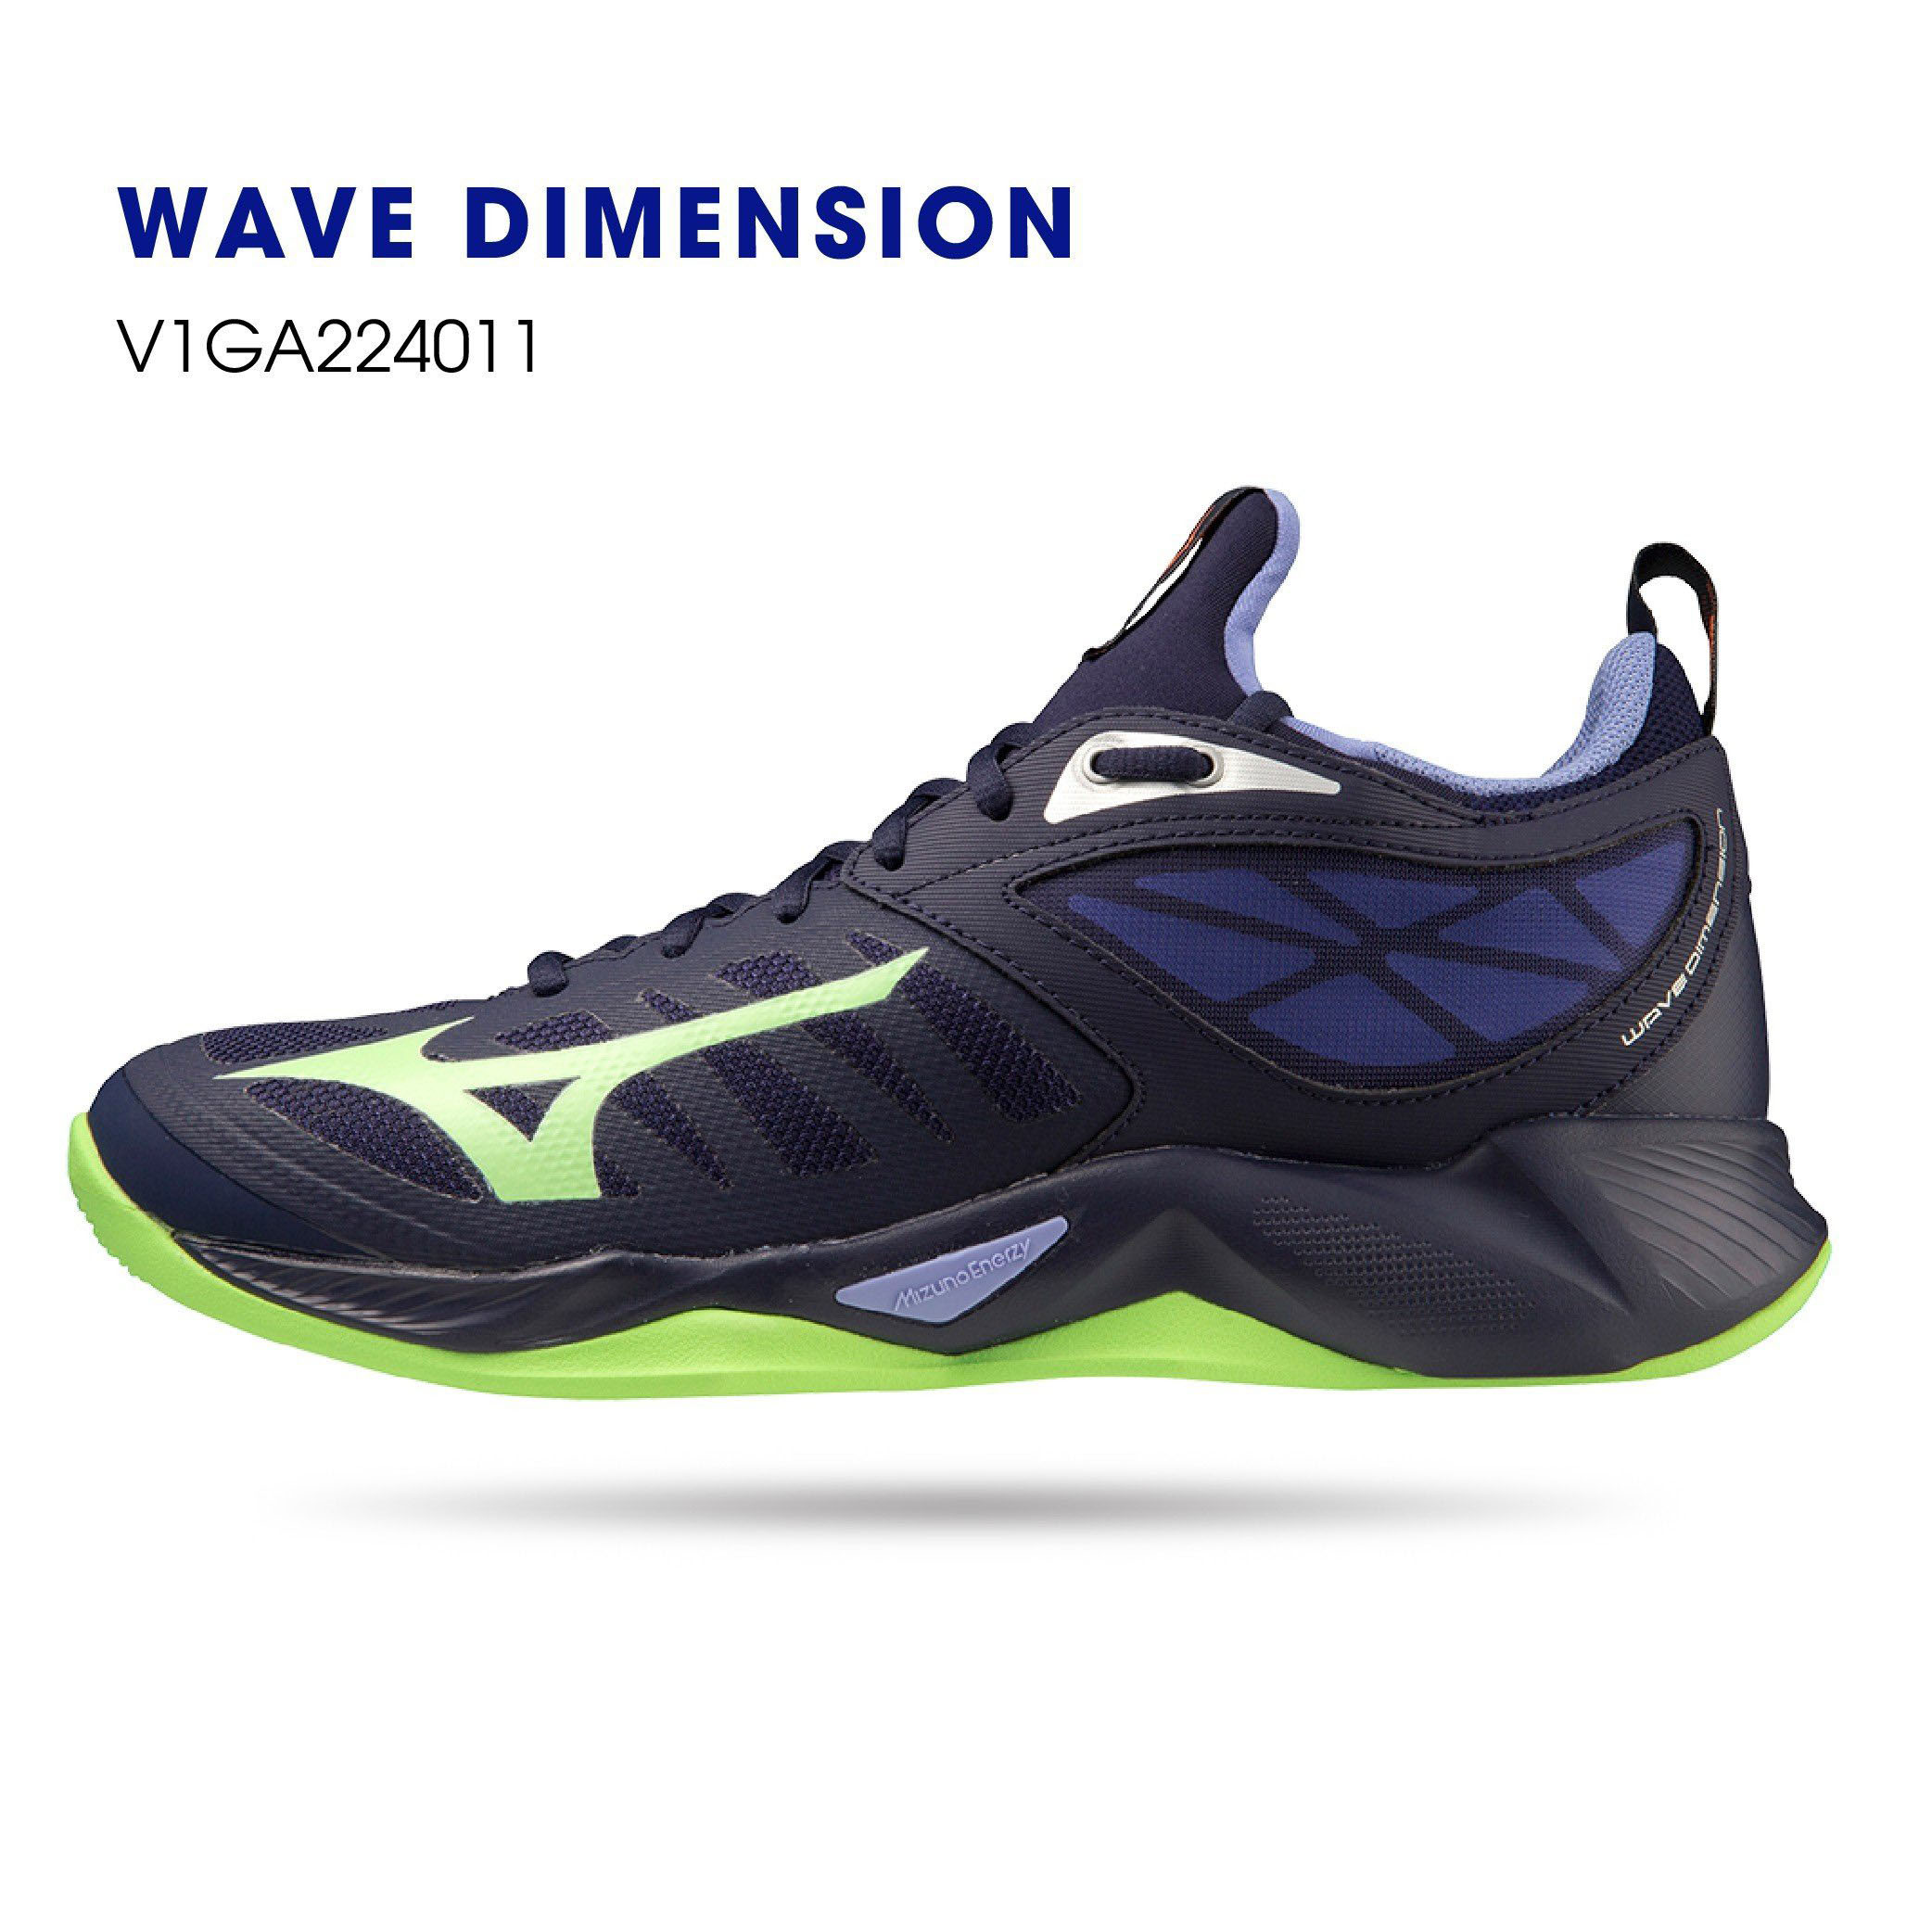 Giày bóng chuyền mizuno chính hãng WAVE DIMENSION có 2 màu - tặng tất thể thao bendu